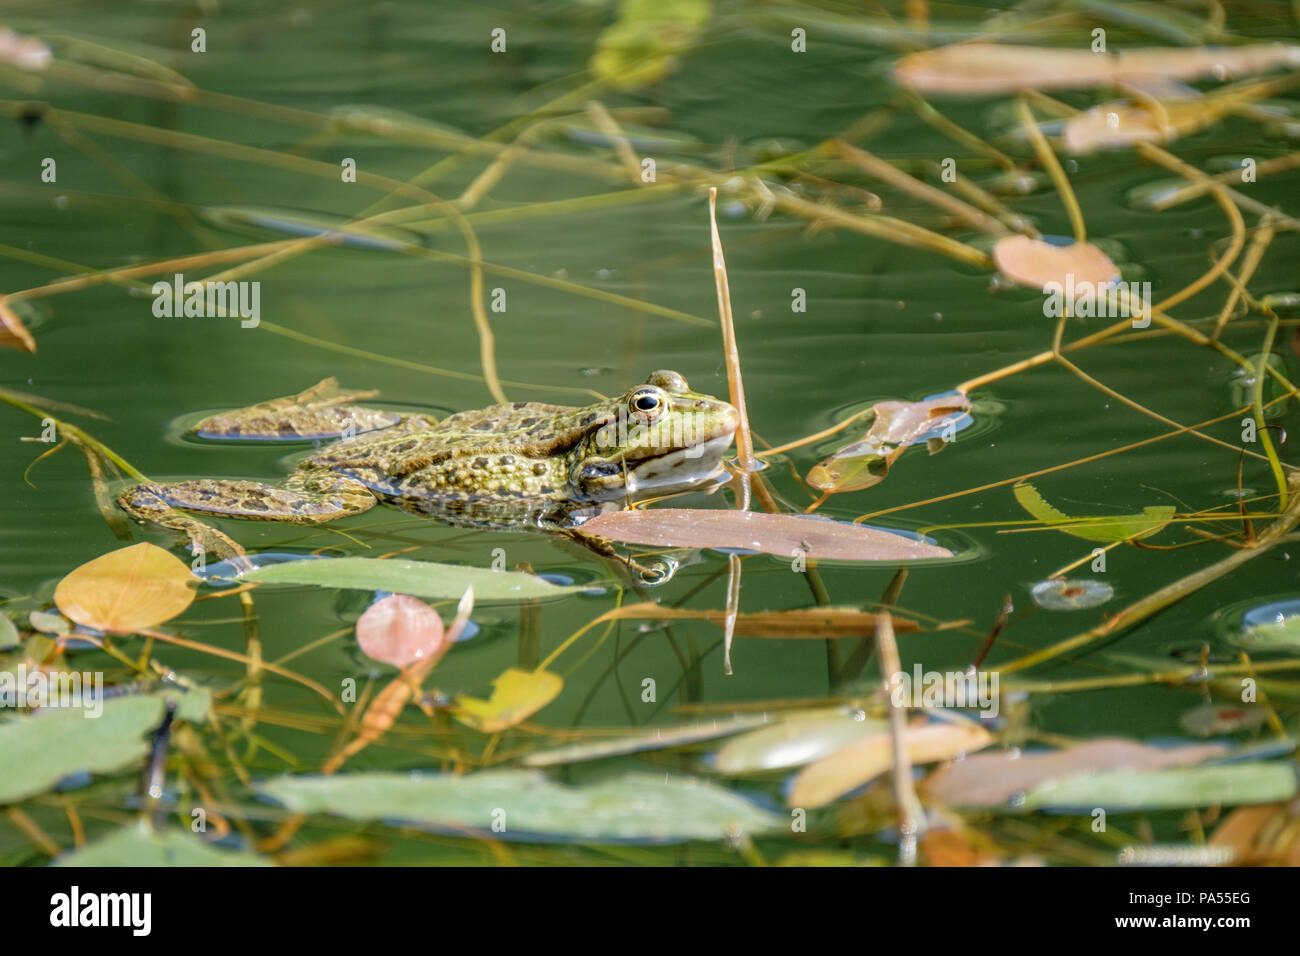 Einen Frosch in einen Teich. Frösche in einem schönen frisches Wasser Teich  in der Schweiz Stockfotografie - Alamy